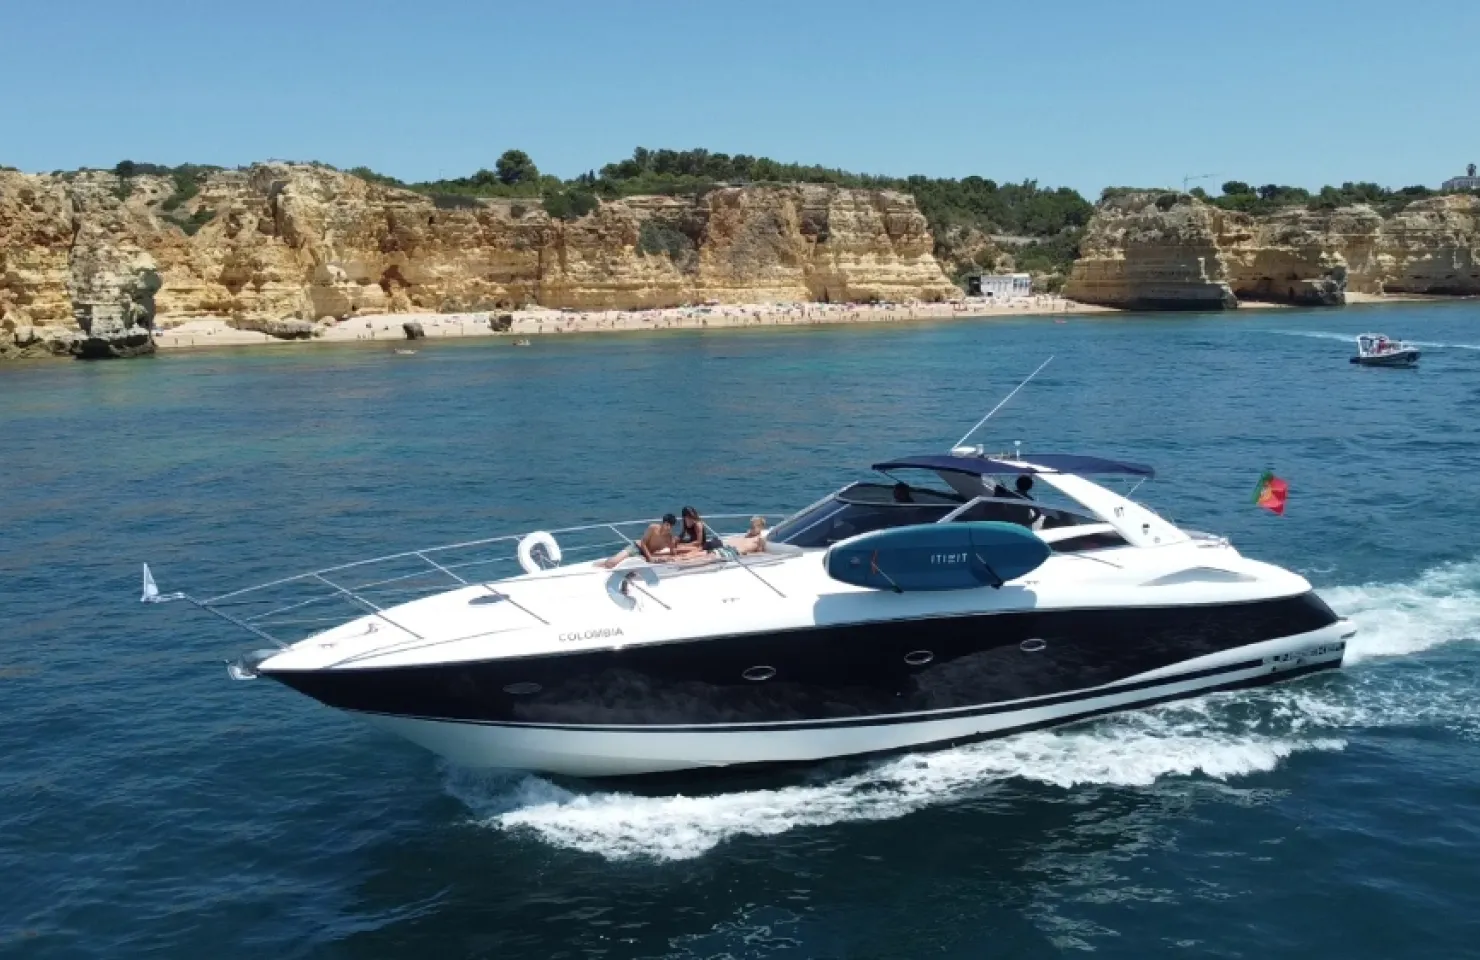 Algarve Yacht Charter - Luxury Boat Trips